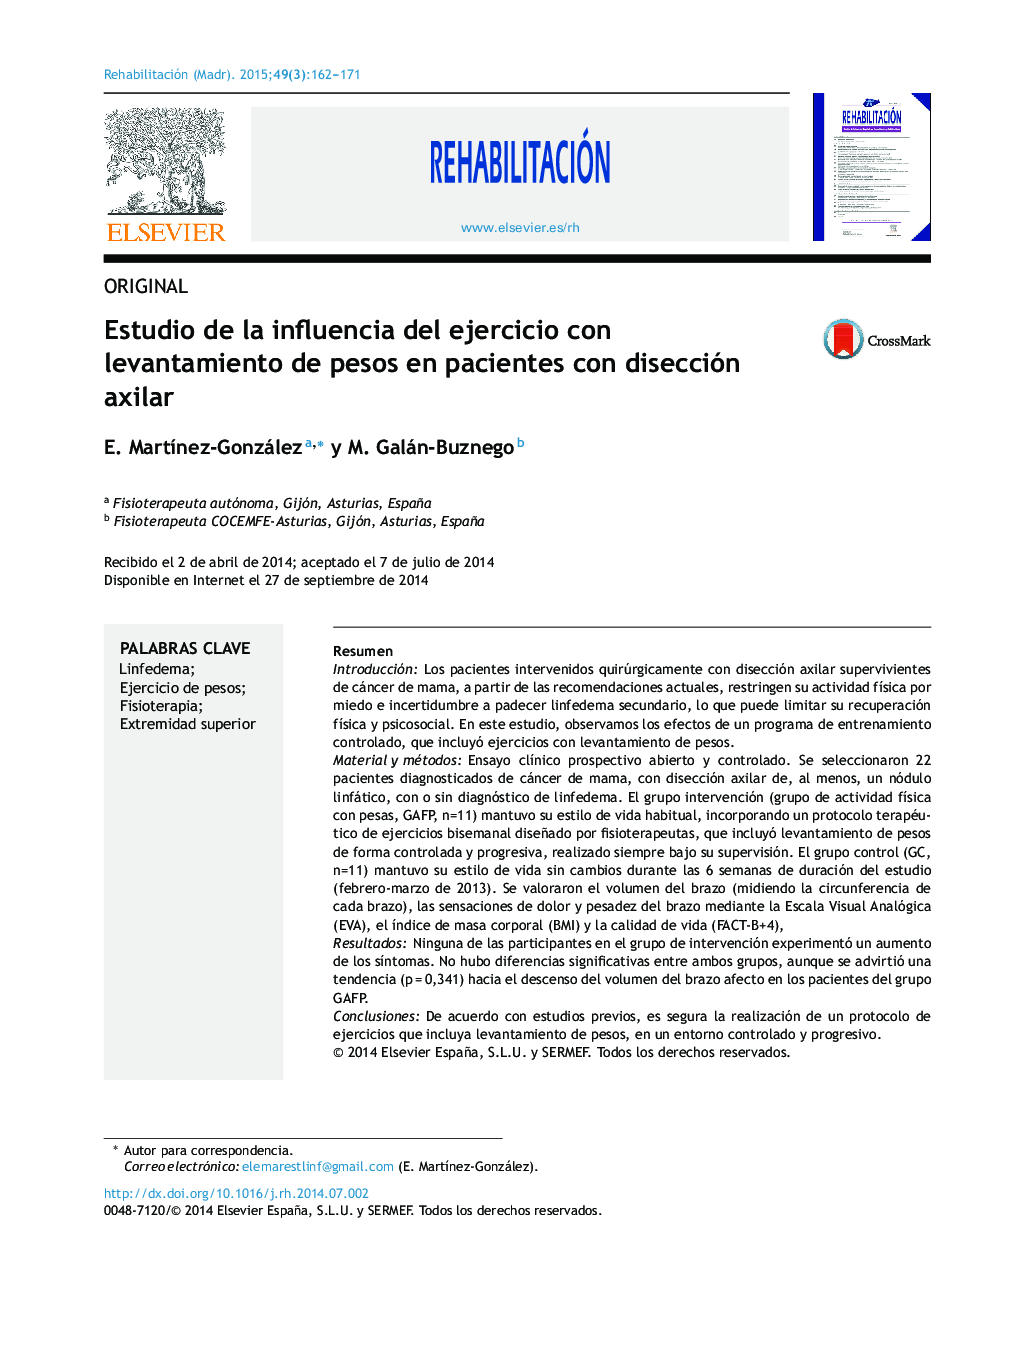 Estudio de la influencia del ejercicio con levantamiento de pesos en pacientes con disección axilar